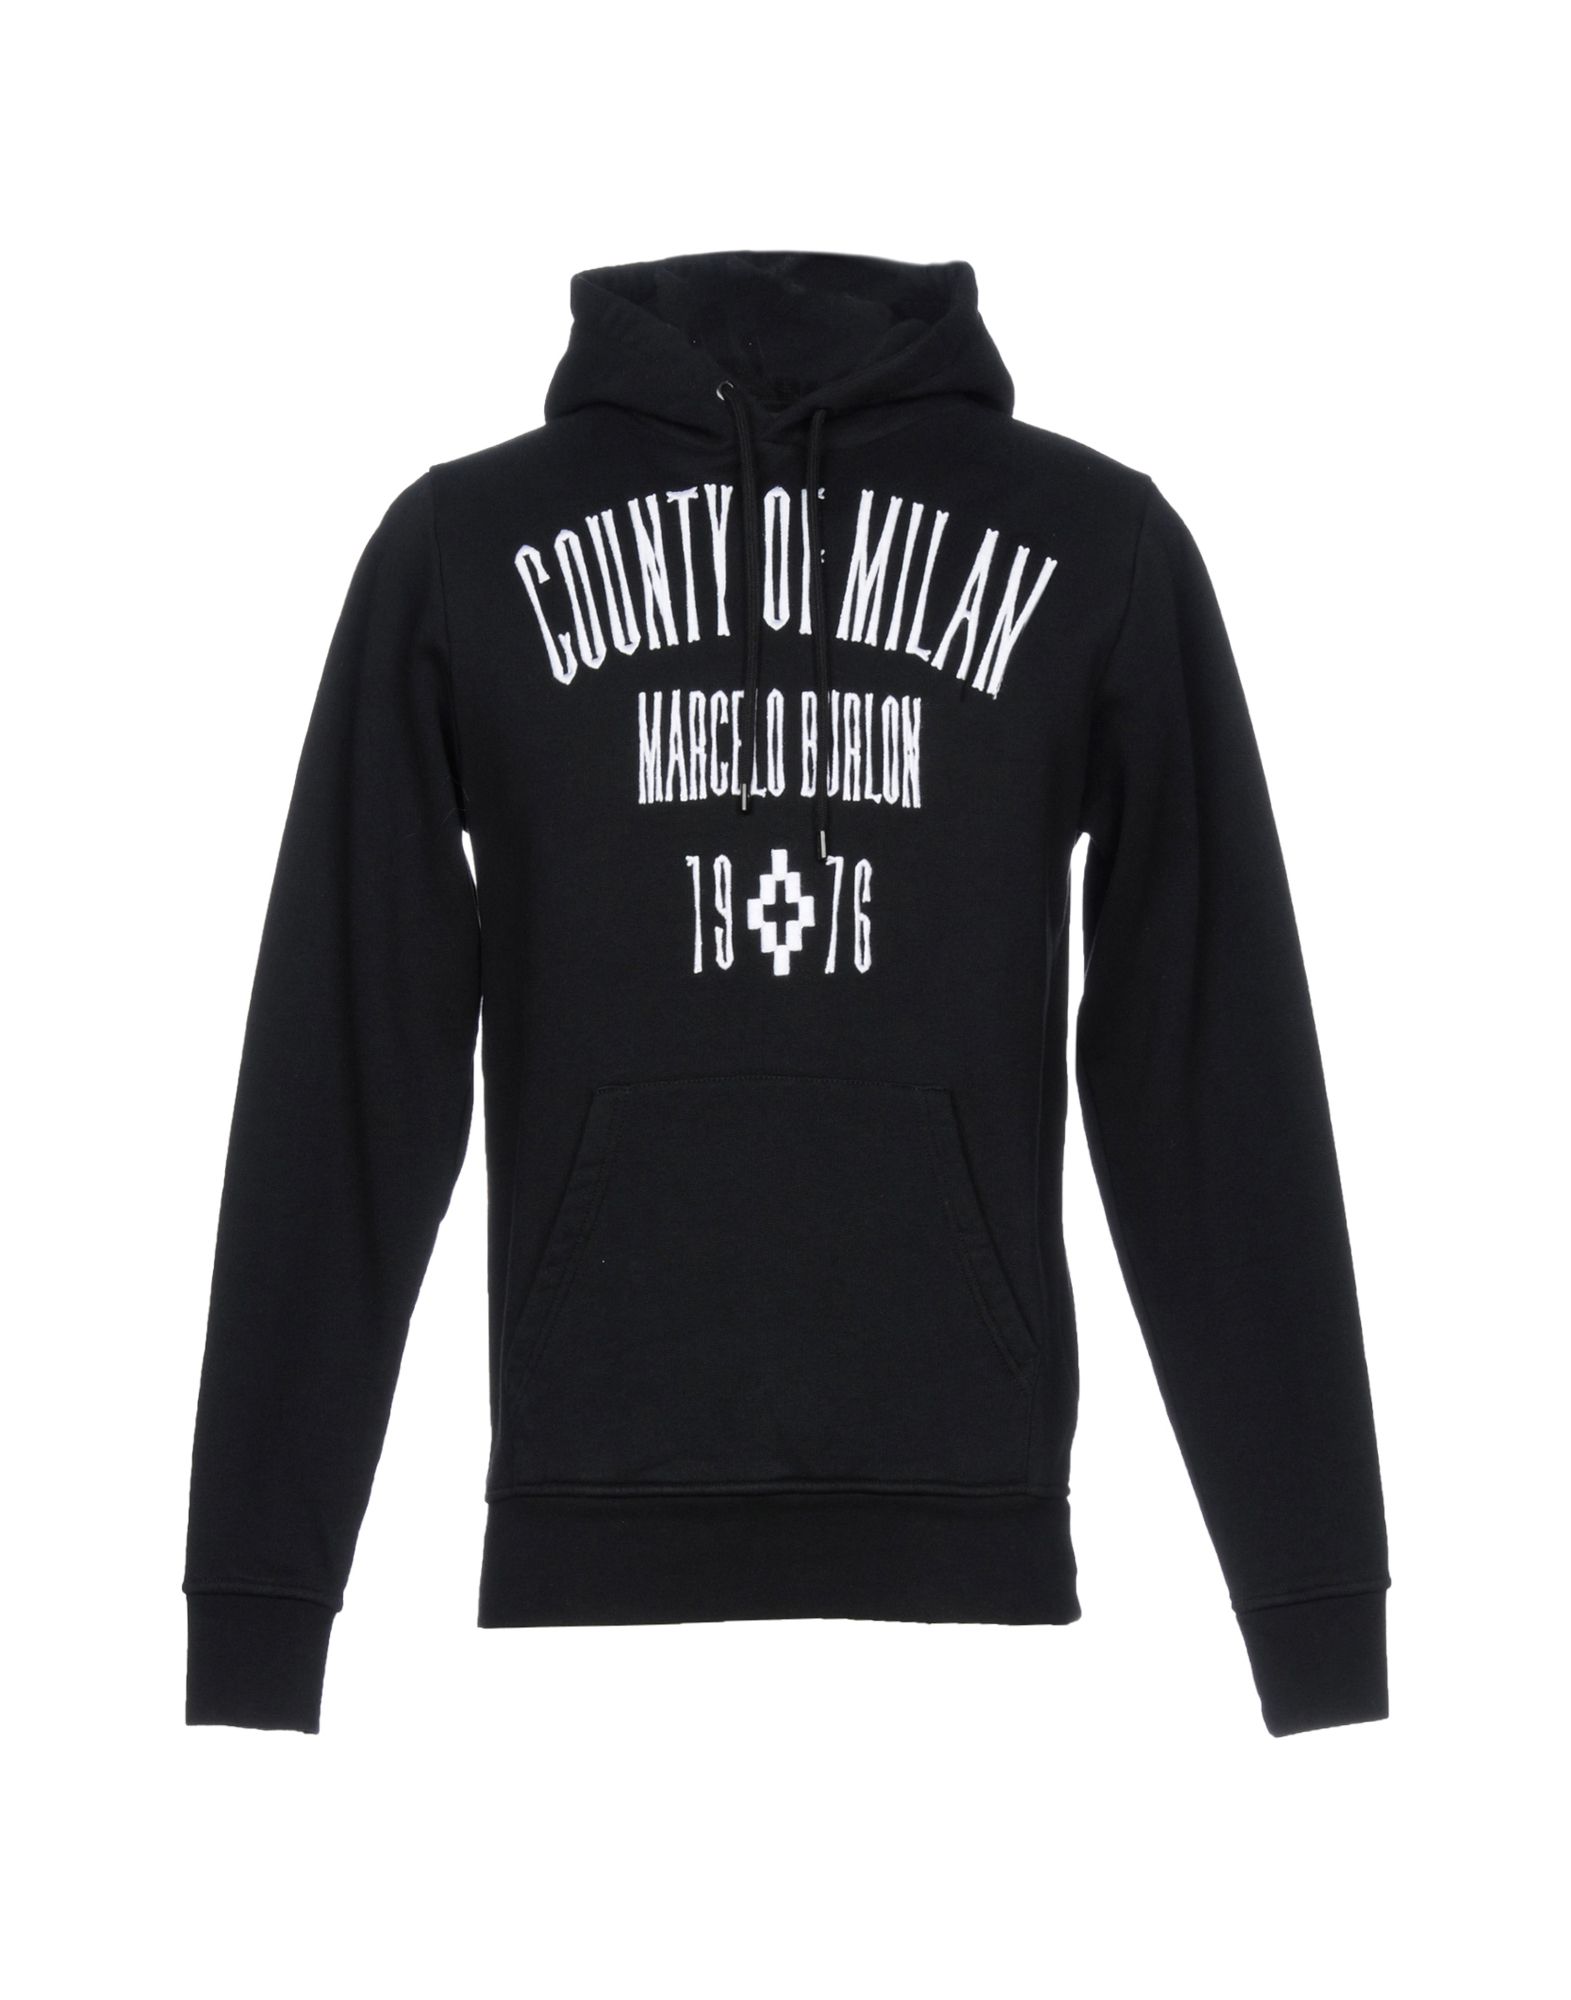 MARCELO BURLON COUNTY OF MILAN Hooded sweatshirt,12171129PQ 6